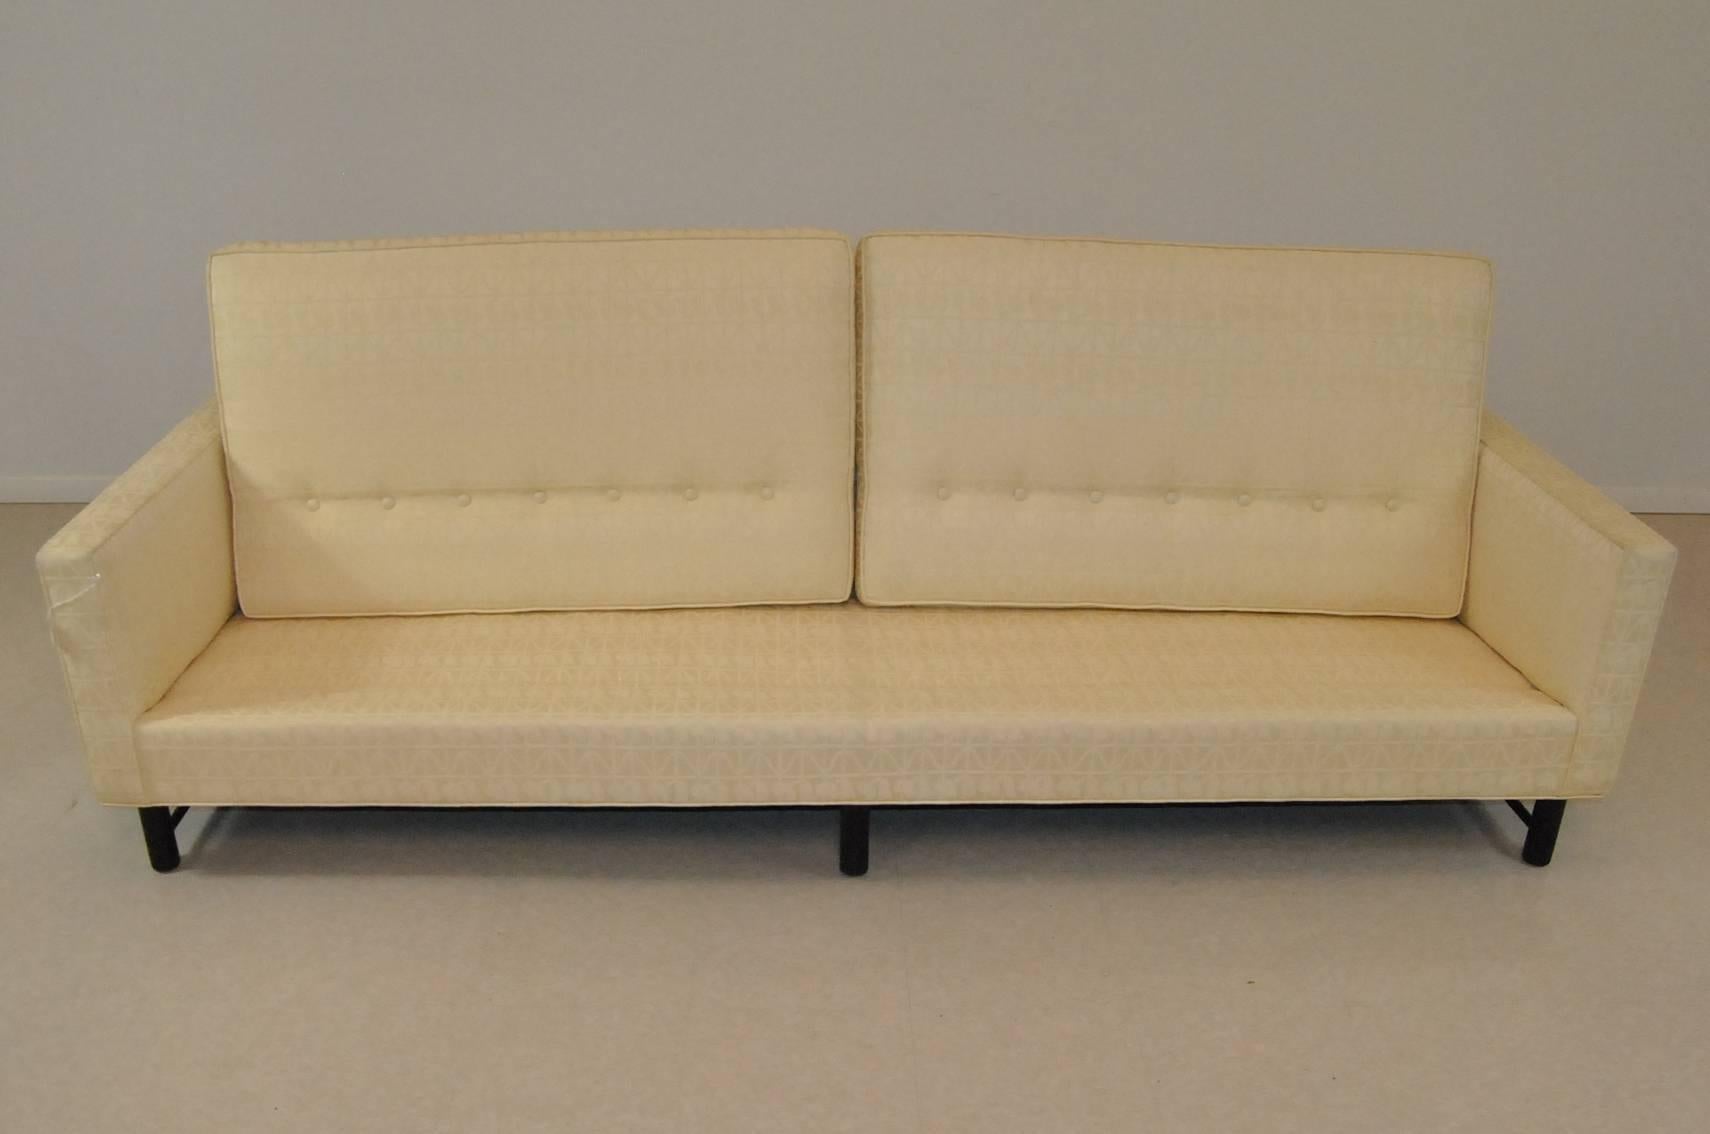 Fabric Dunbar Sofa Model 5138 Designed by Edward Wormley 